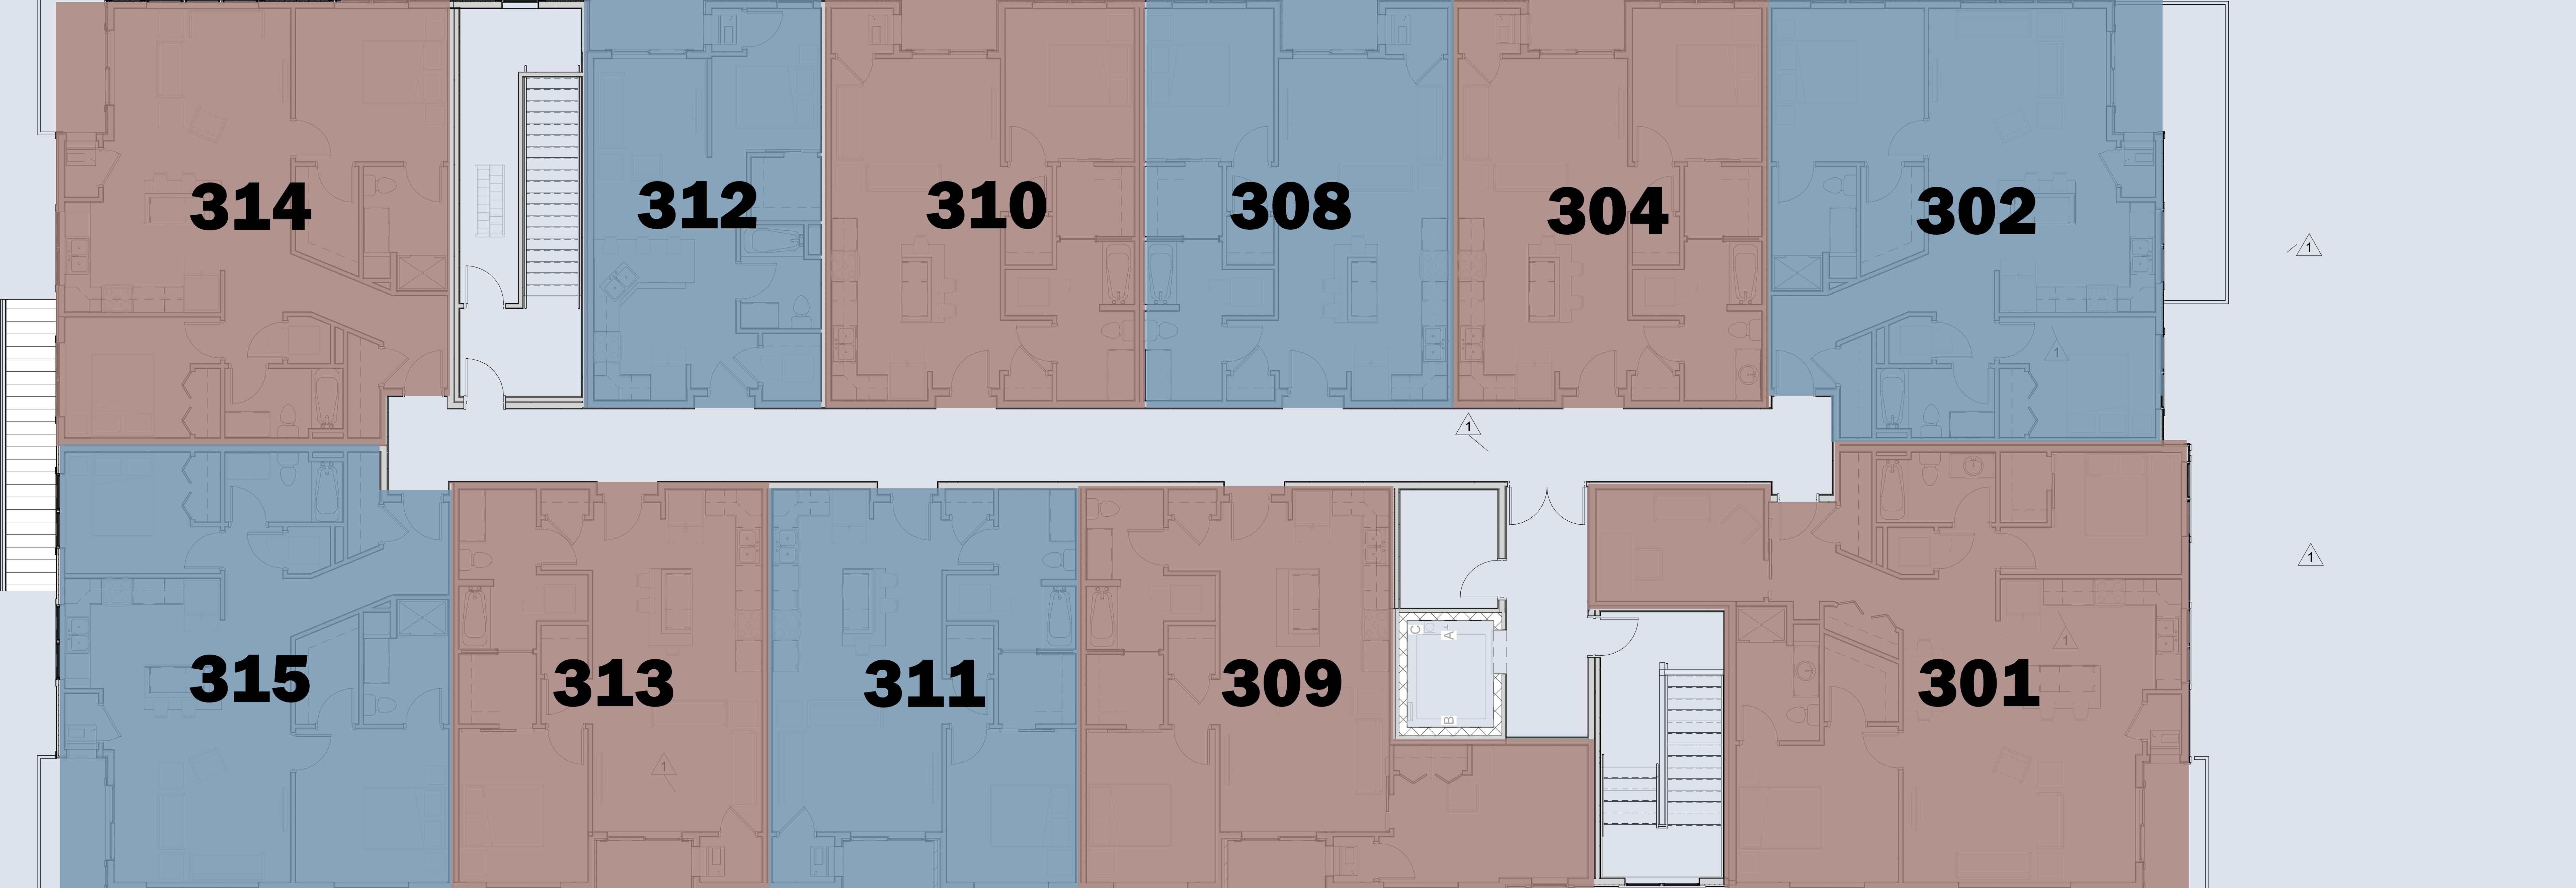 Midtown Reserve second level floor plan